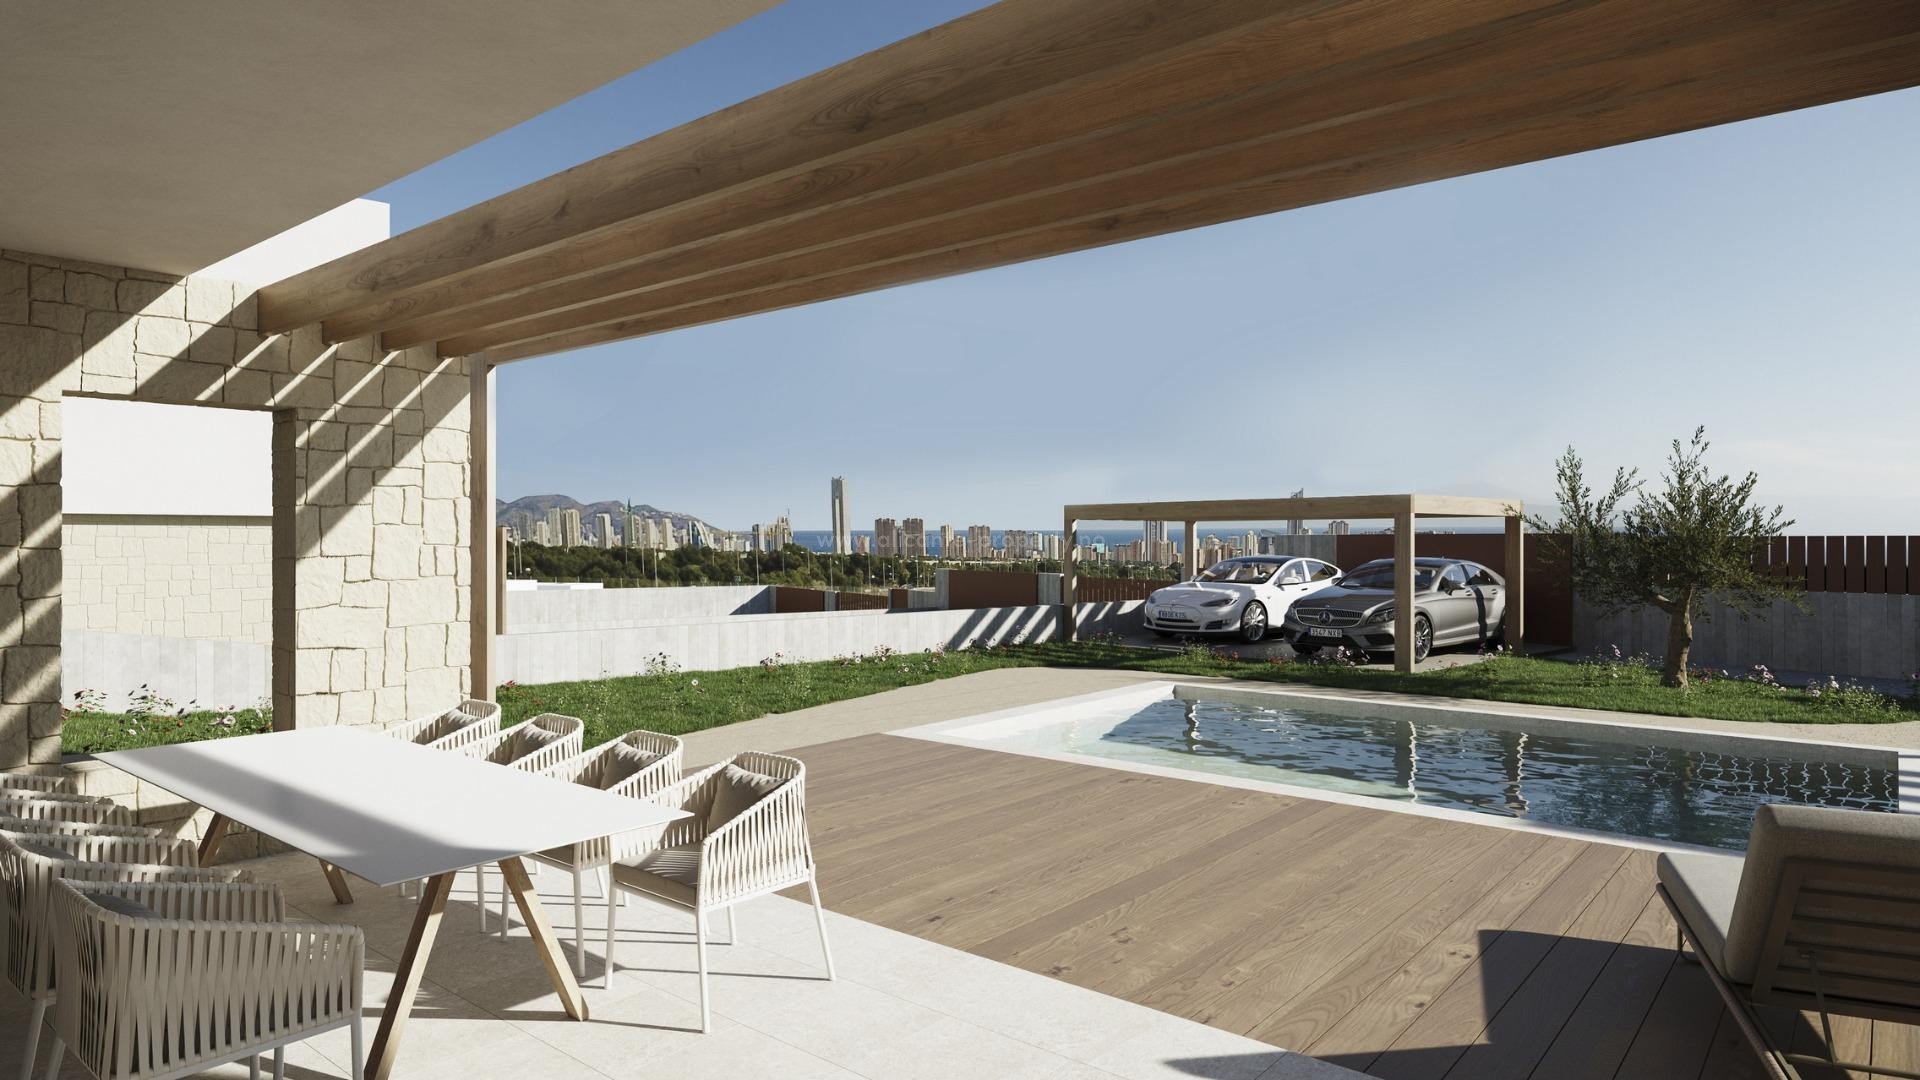 Villa/hus i Campana Garden, Finestrat, 3 soverom, 3 bad, terrasse med fantastisk utsikt over Benidorm, privat hage med svømmebasseng og parkeringsplass